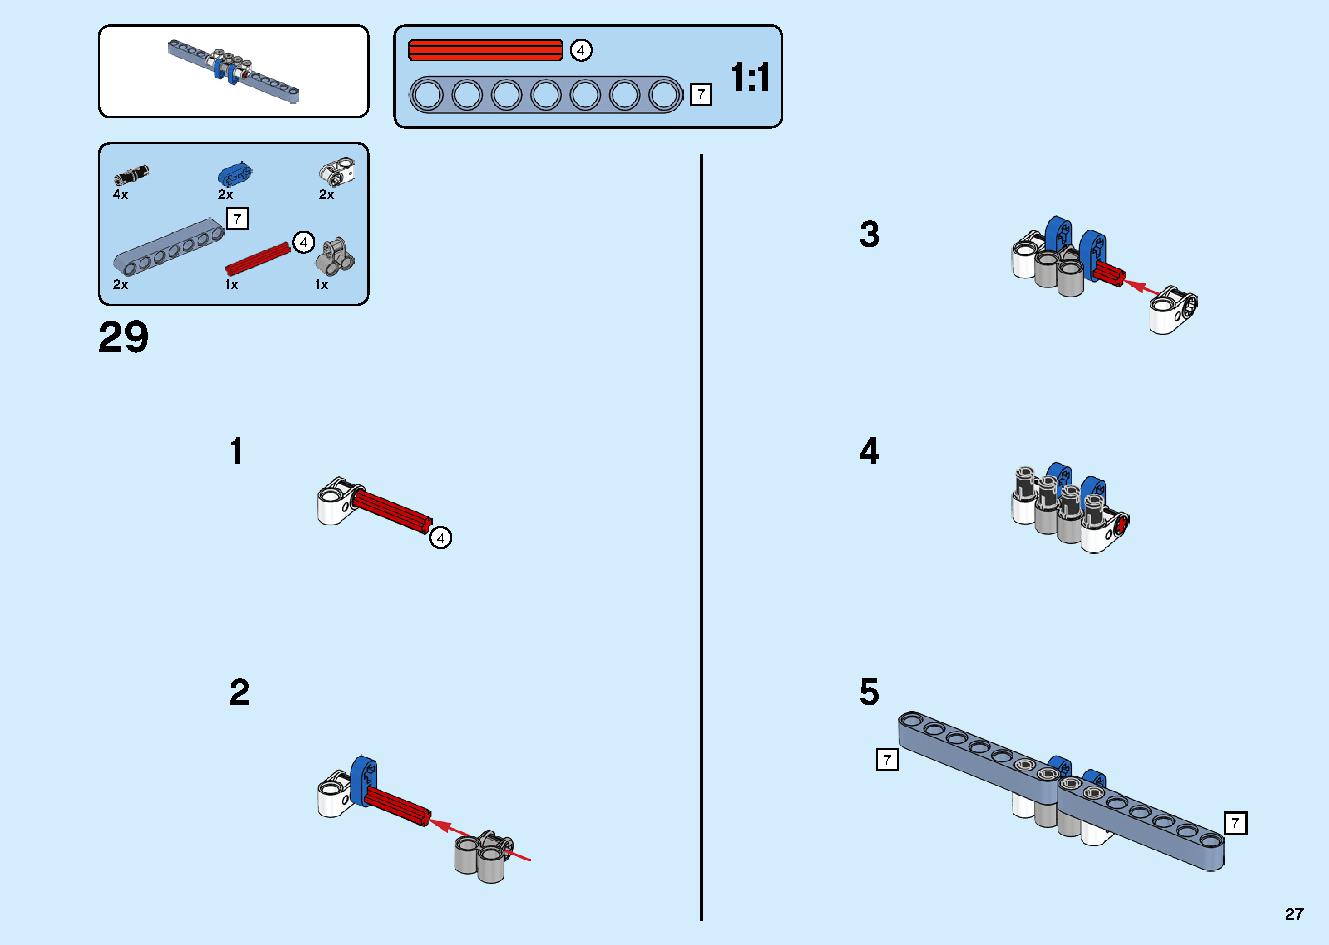 陸上戦艦バウンティ号 70677 レゴの商品情報 レゴの説明書・組立方法 27 page